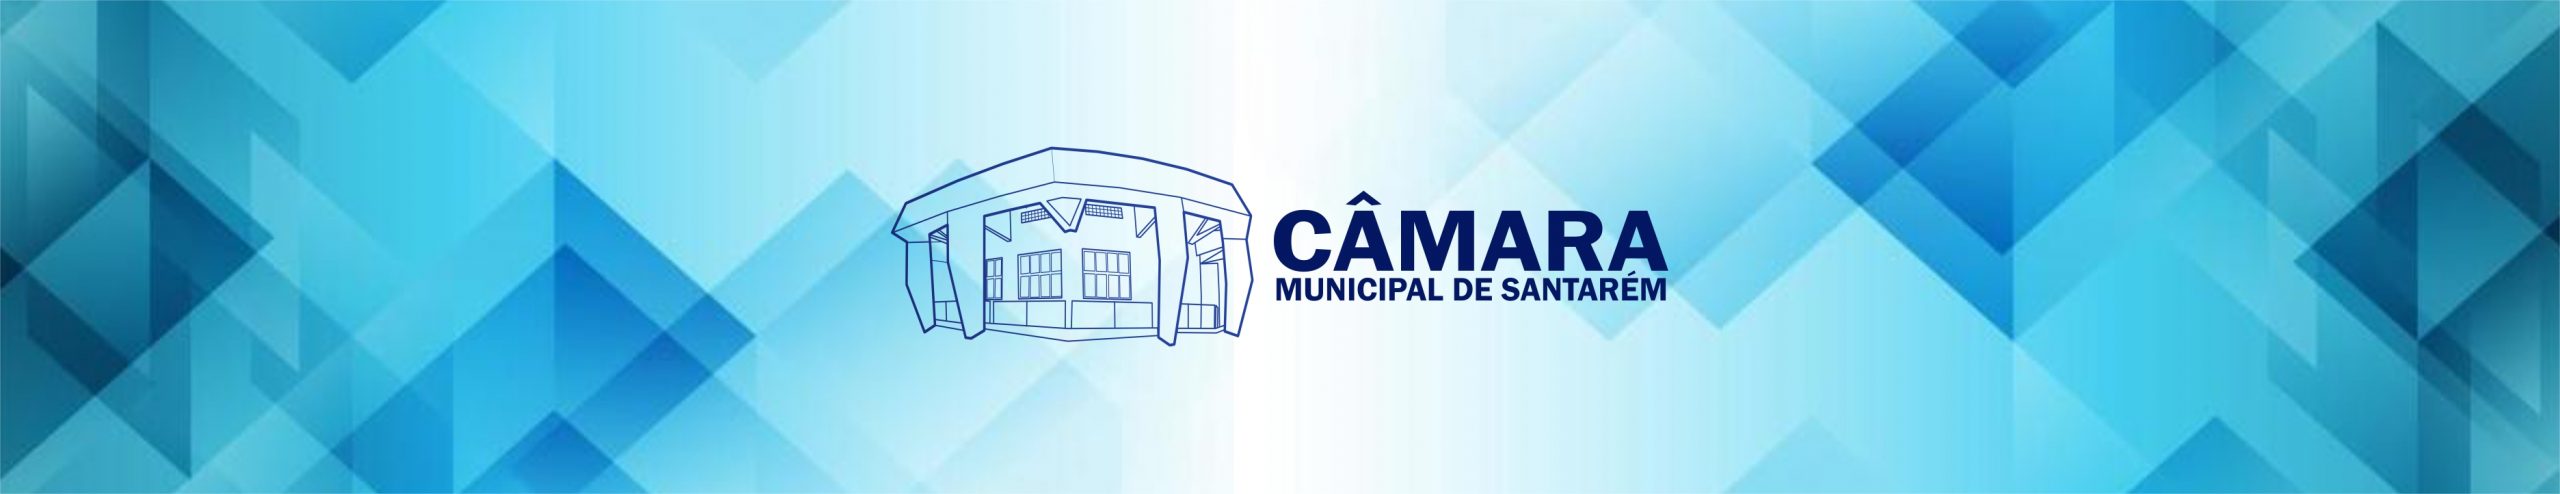 Câmara Municipal de Santarém | Gestão 2021-2022